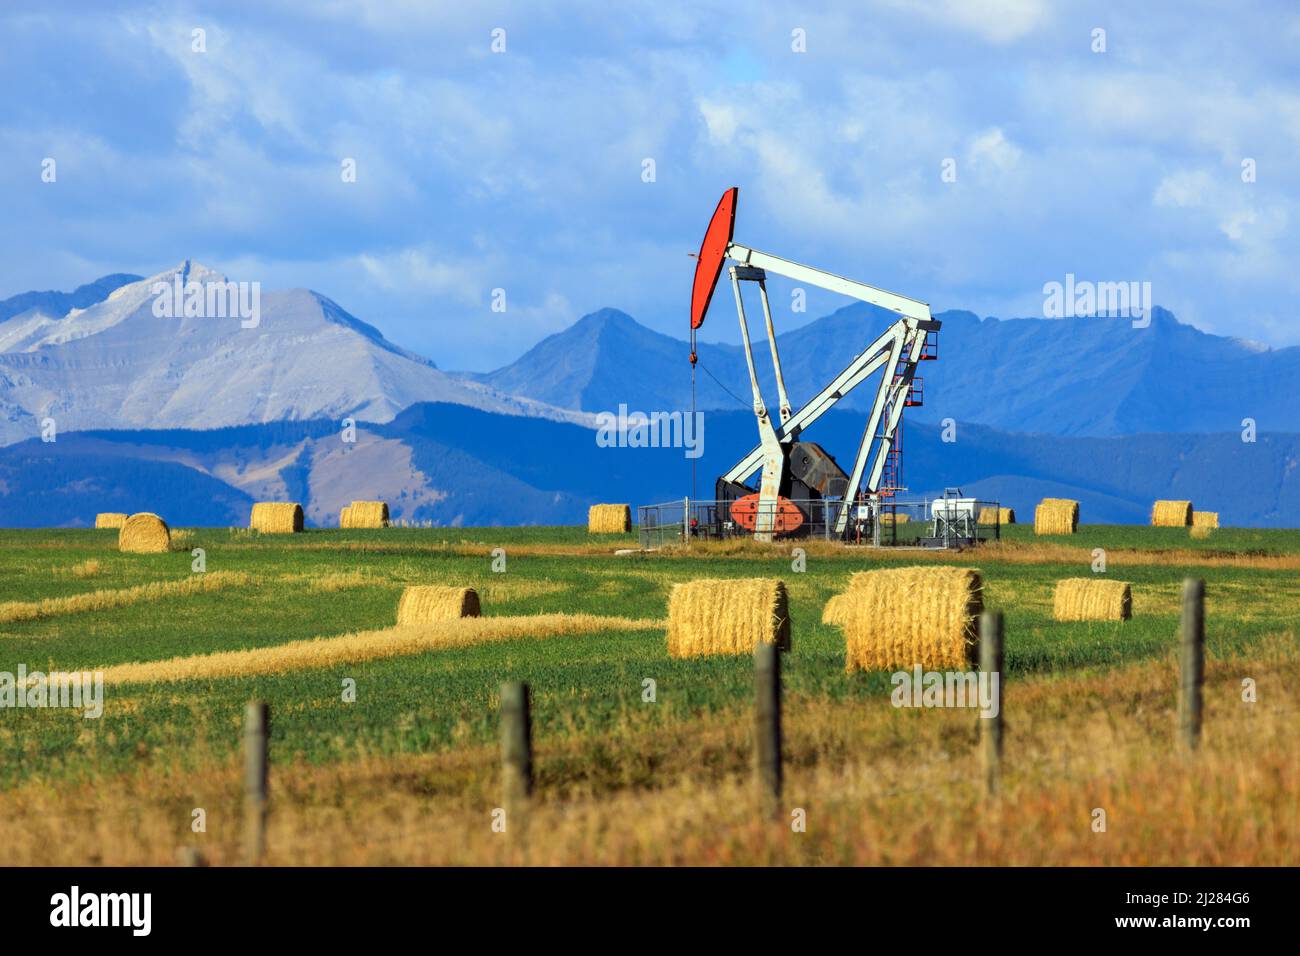 Une plate-forme de forage à la citrouille de l'industrie pétrolière et gazière dans les Prairies canadiennes, avec les Rocheuses canadiennes en Alberta, au Canada. Banque D'Images